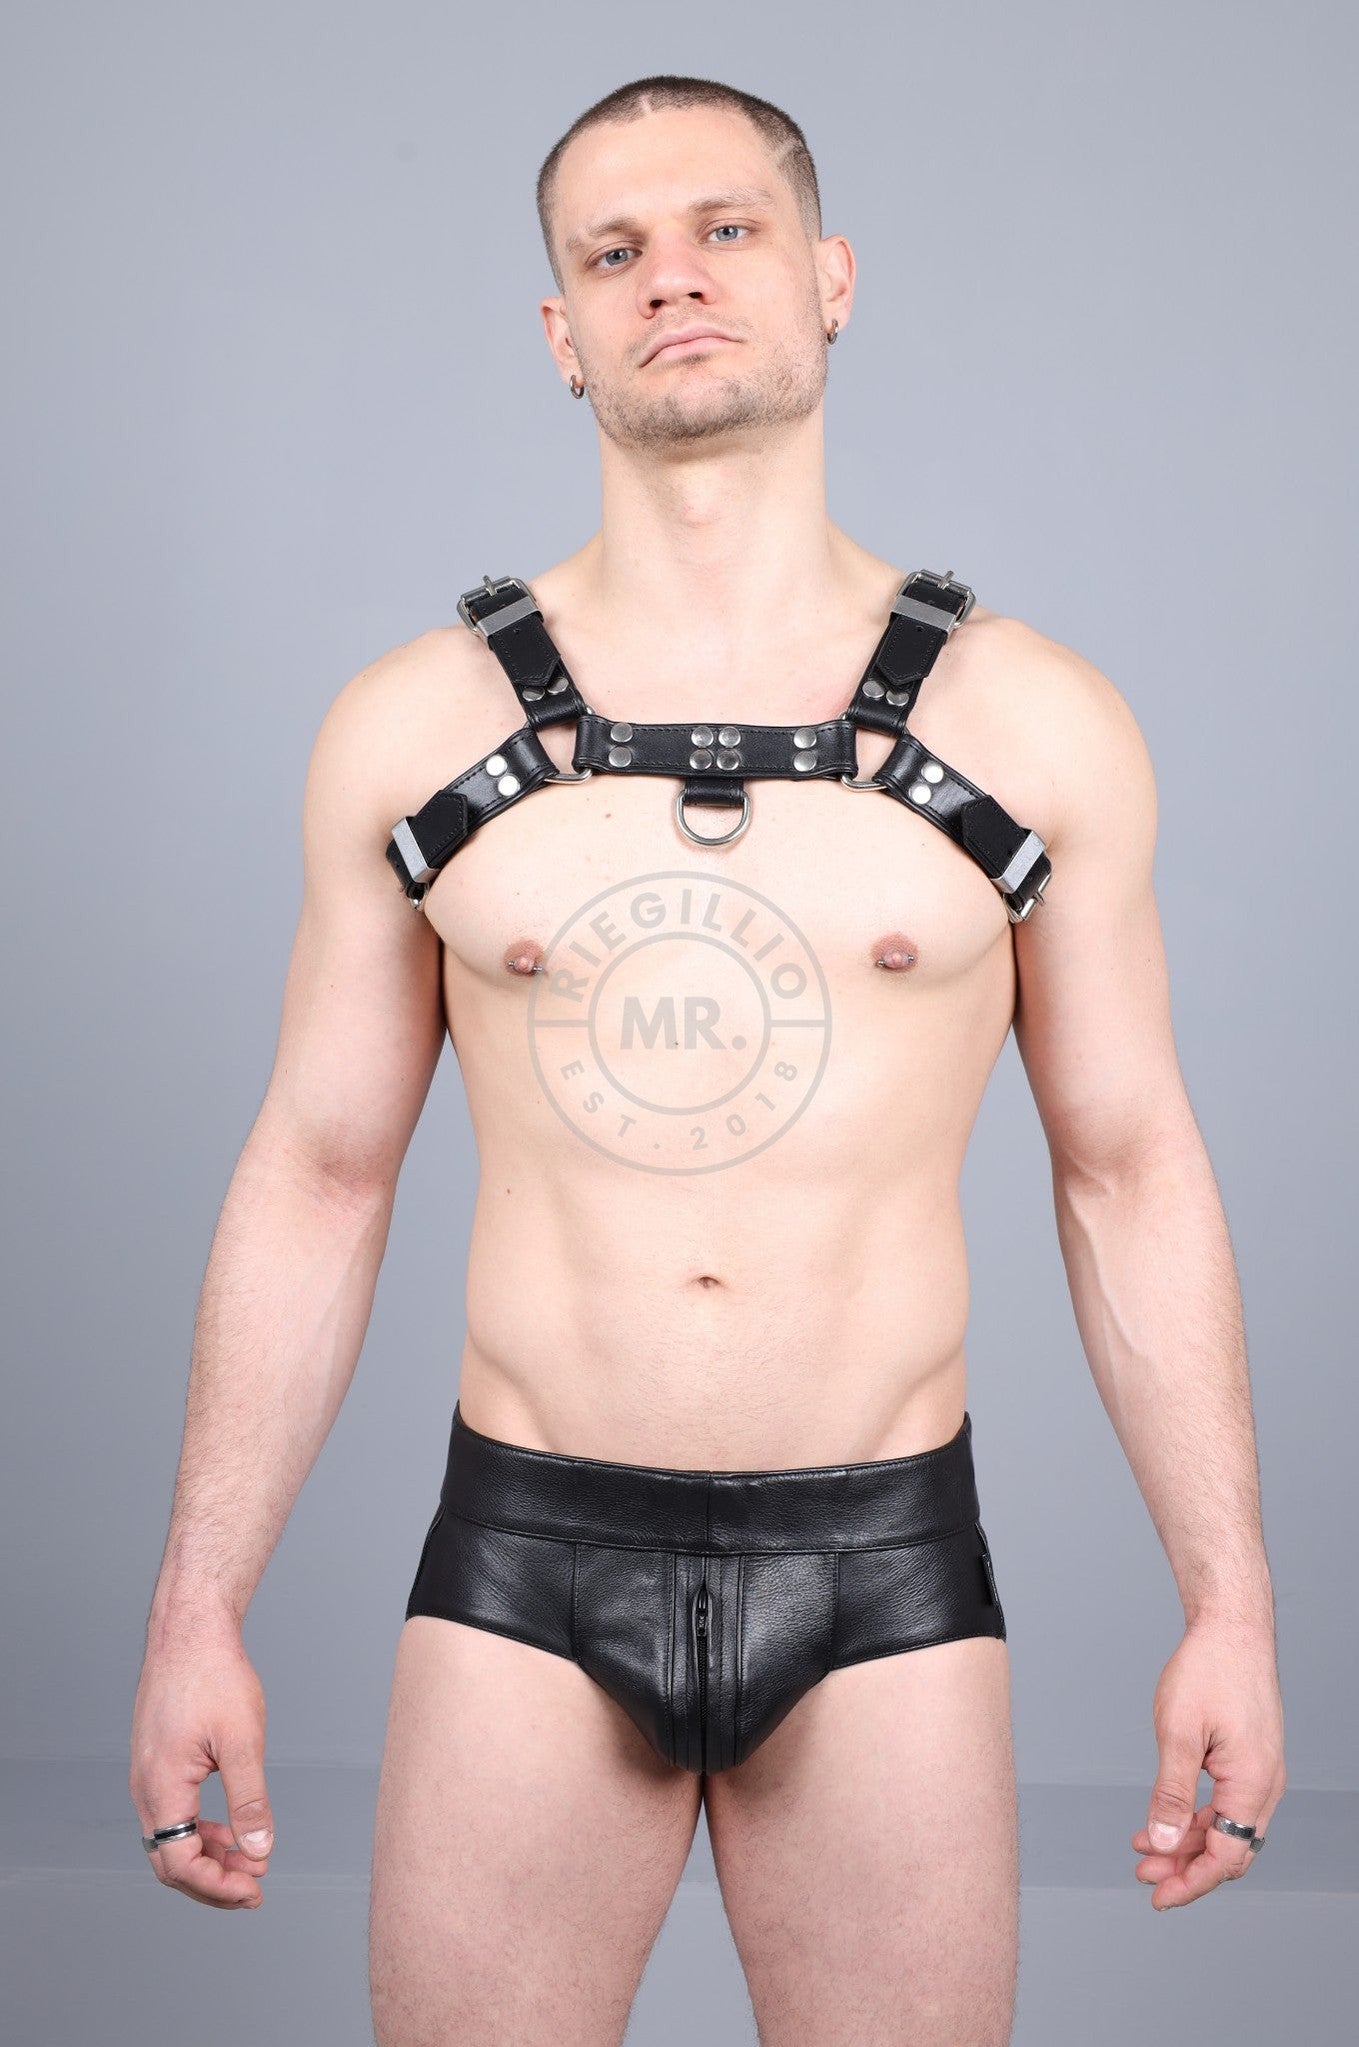 Leather Harness - Black at MR. Riegillio